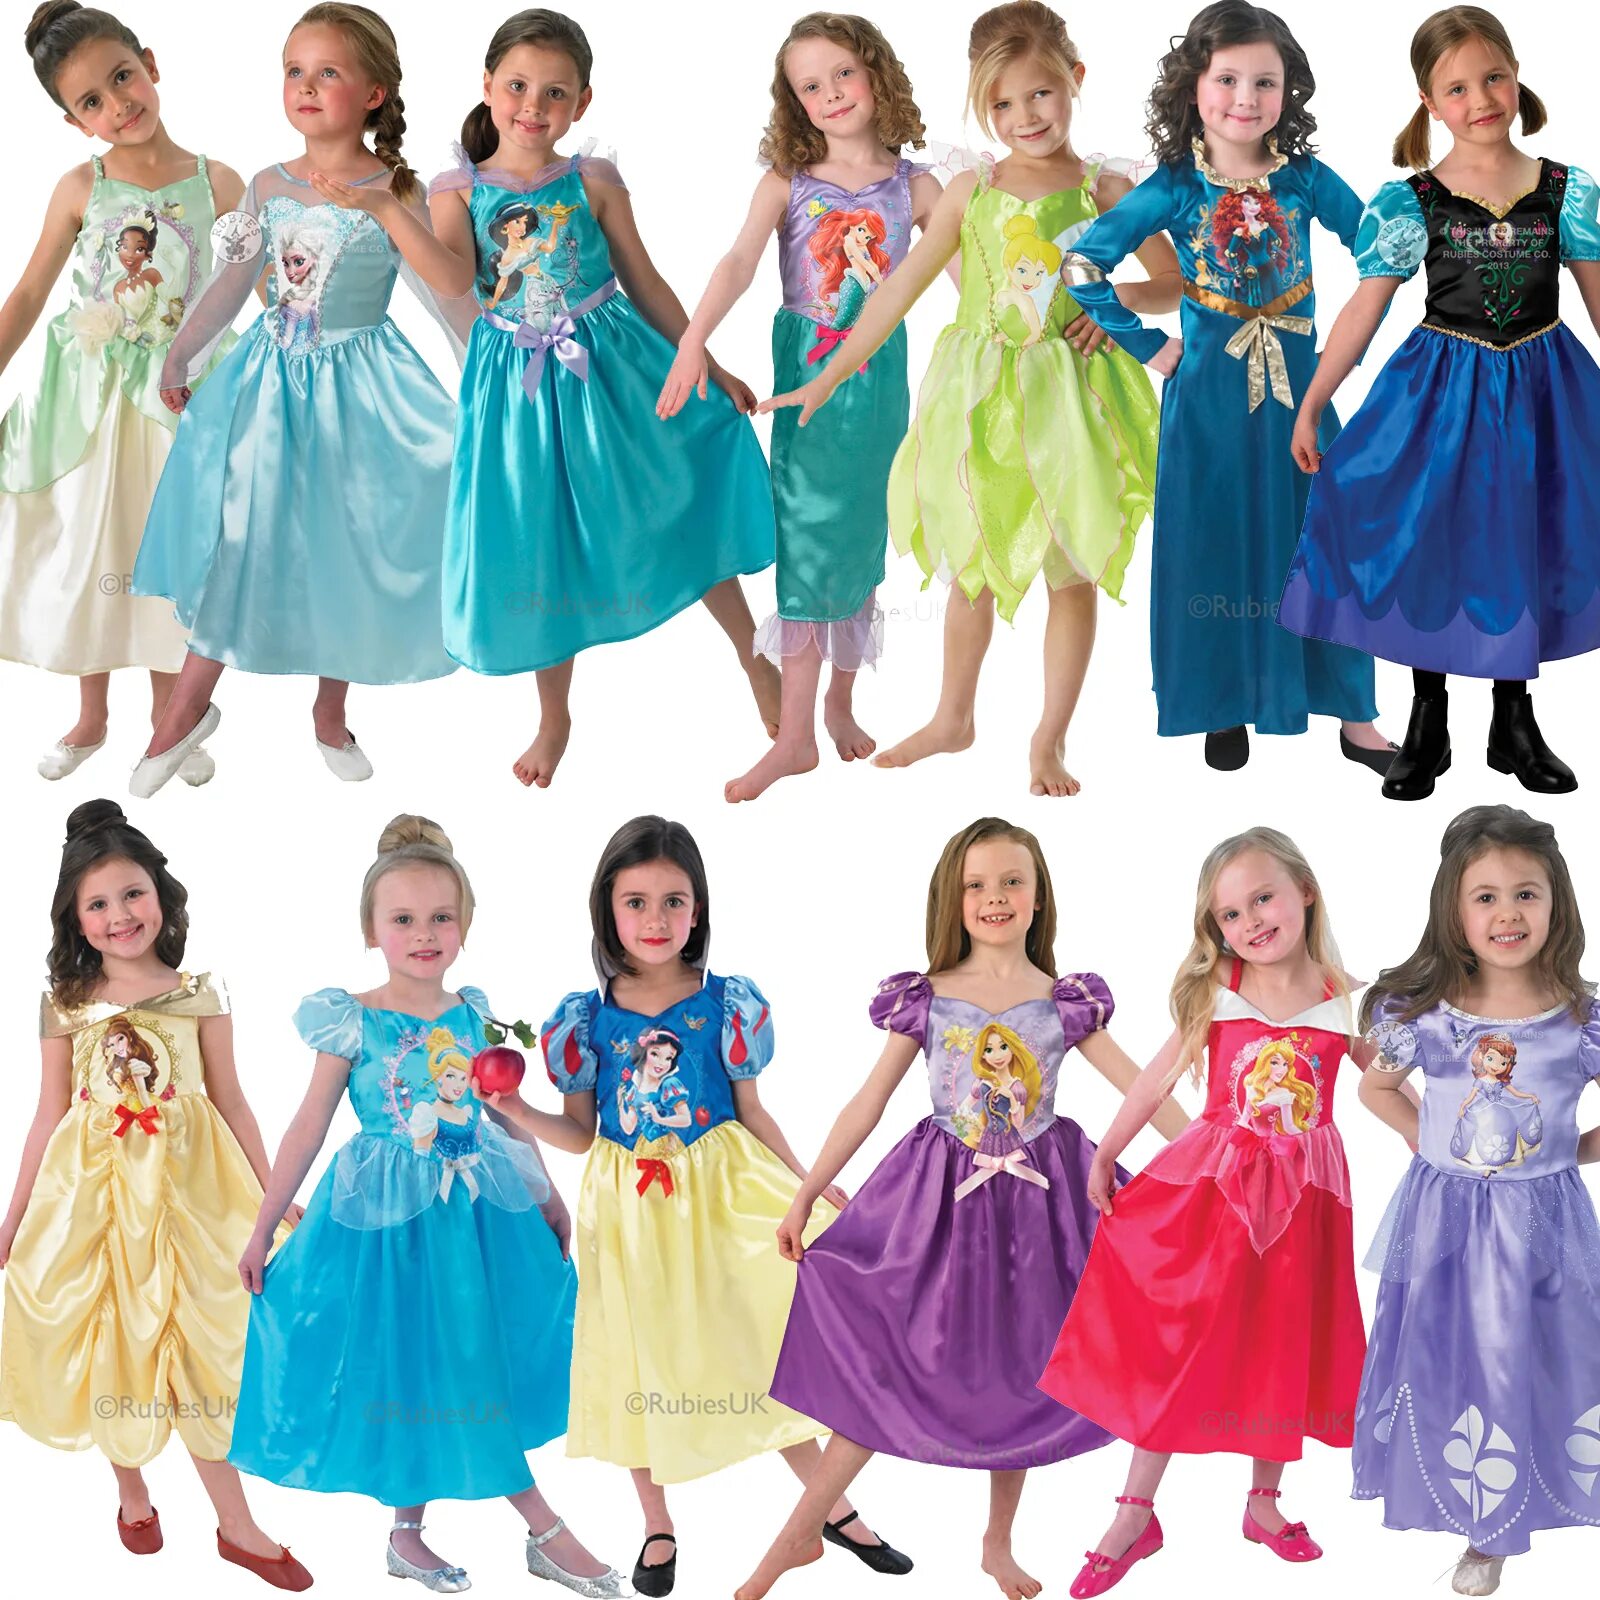 Нарядиться принцессой. Разные платья для девочек. Платья для принцессы. Платья принцесс Диснея для девочек. Костюм принцессы для девочки.